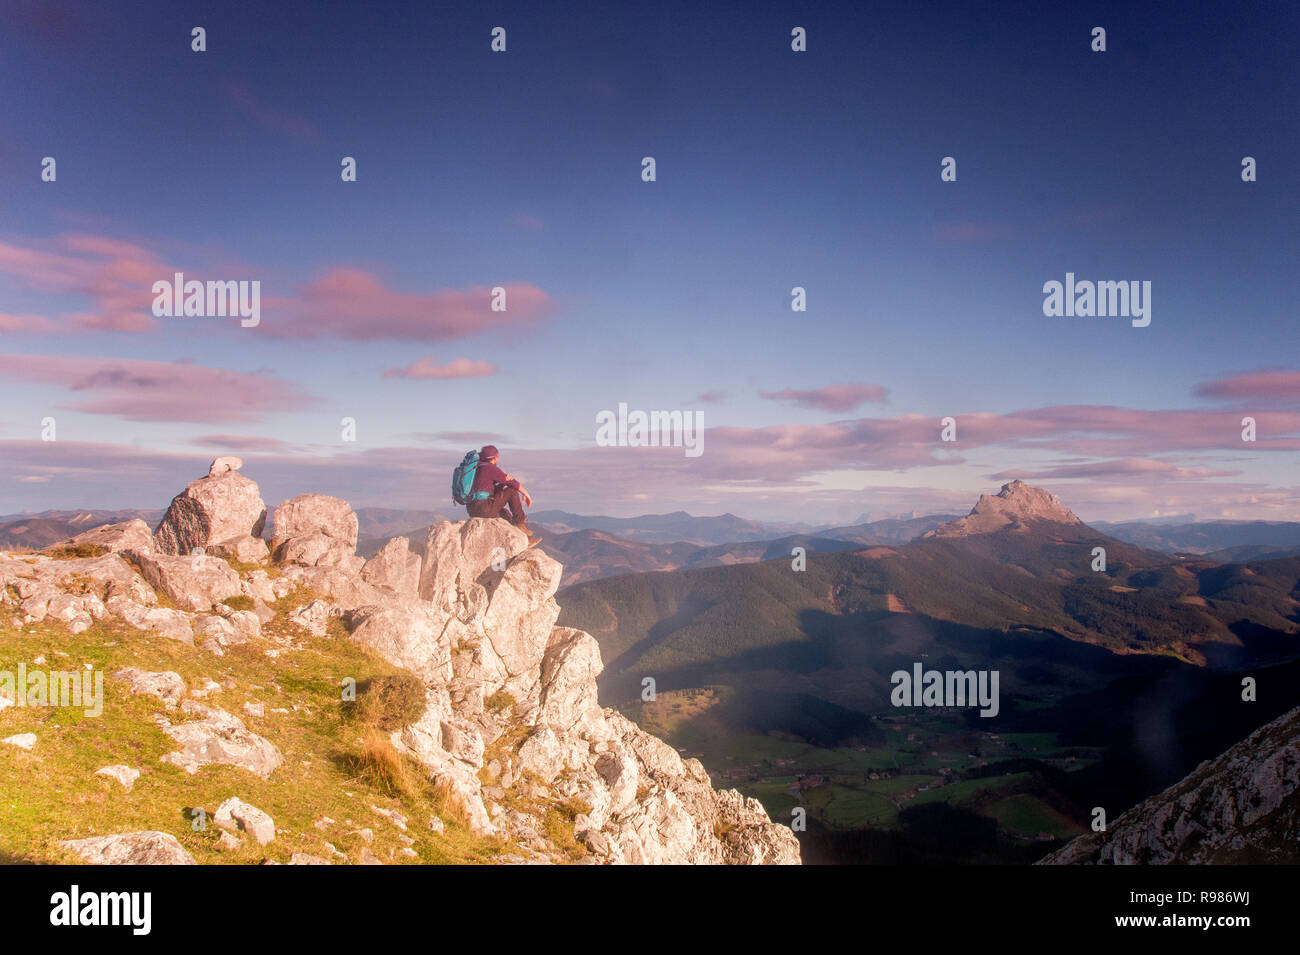 L'homme au sommet d'une montagne à l'horizon en parc naturel Urkiola, Pays basque Banque D'Images